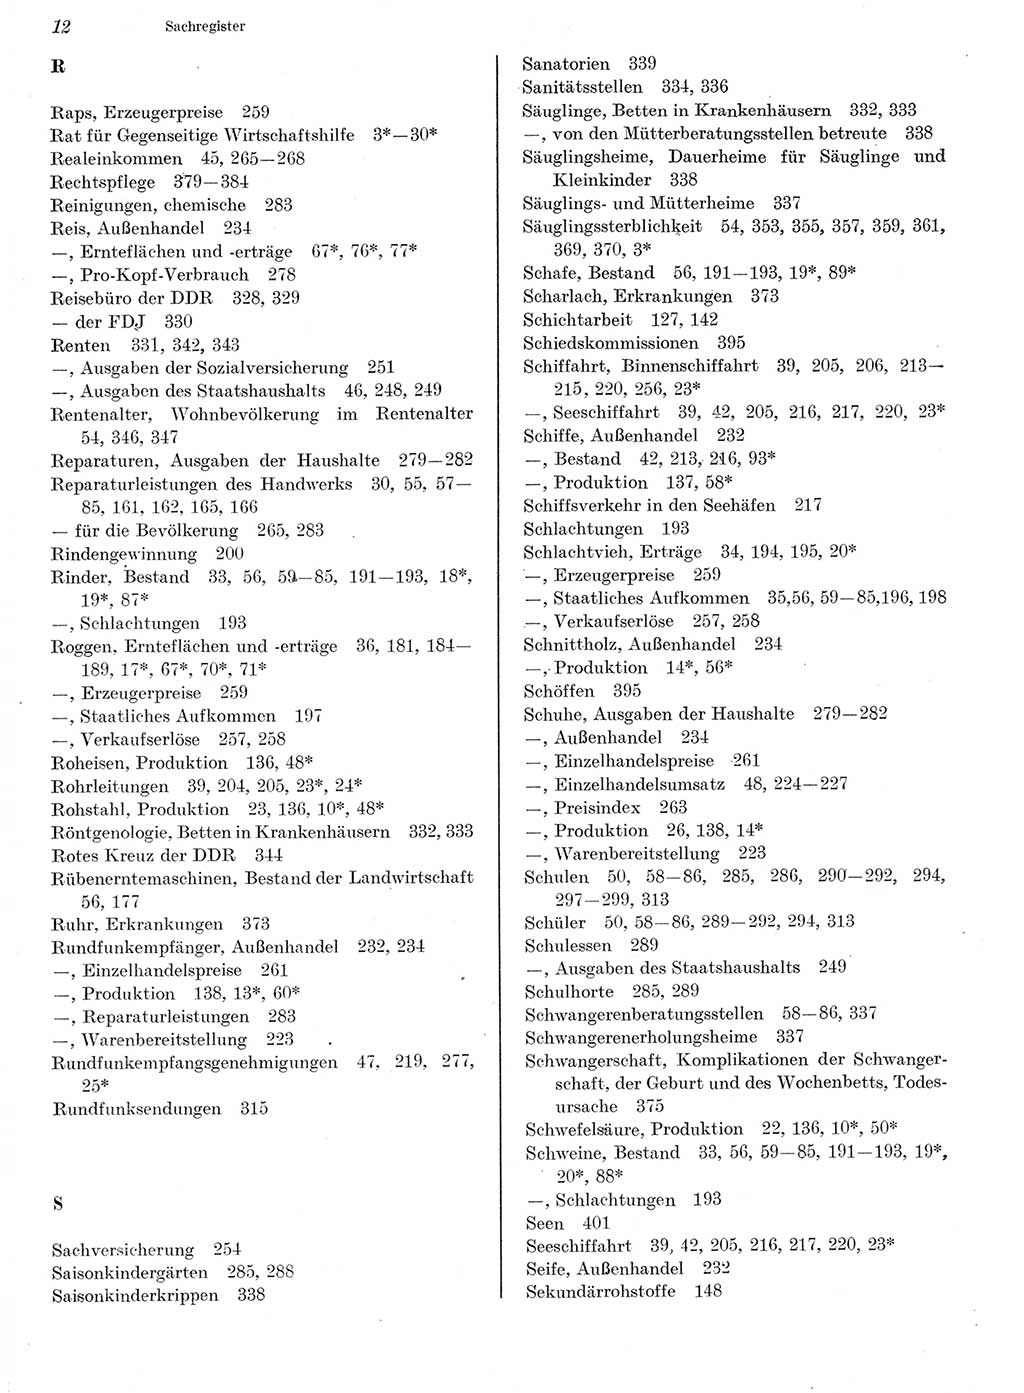 Statistisches Jahrbuch der Deutschen Demokratischen Republik (DDR) 1982, Seite 12 (Stat. Jb. DDR 1982, S. 12)